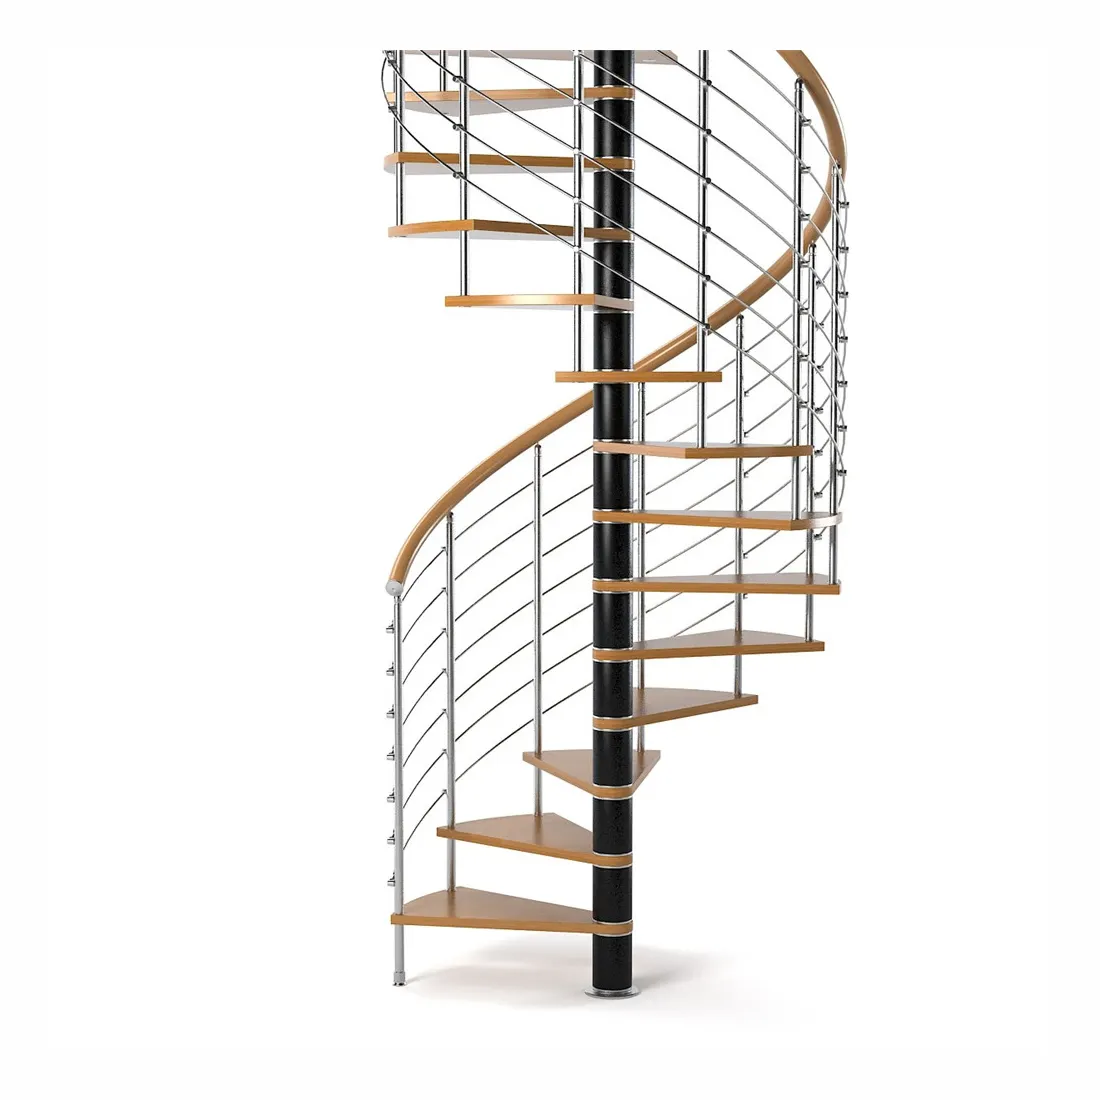 Escalones en espiral de hierro para interiores, modelos de escaleras en espiral para el segundo piso con cristales laminados